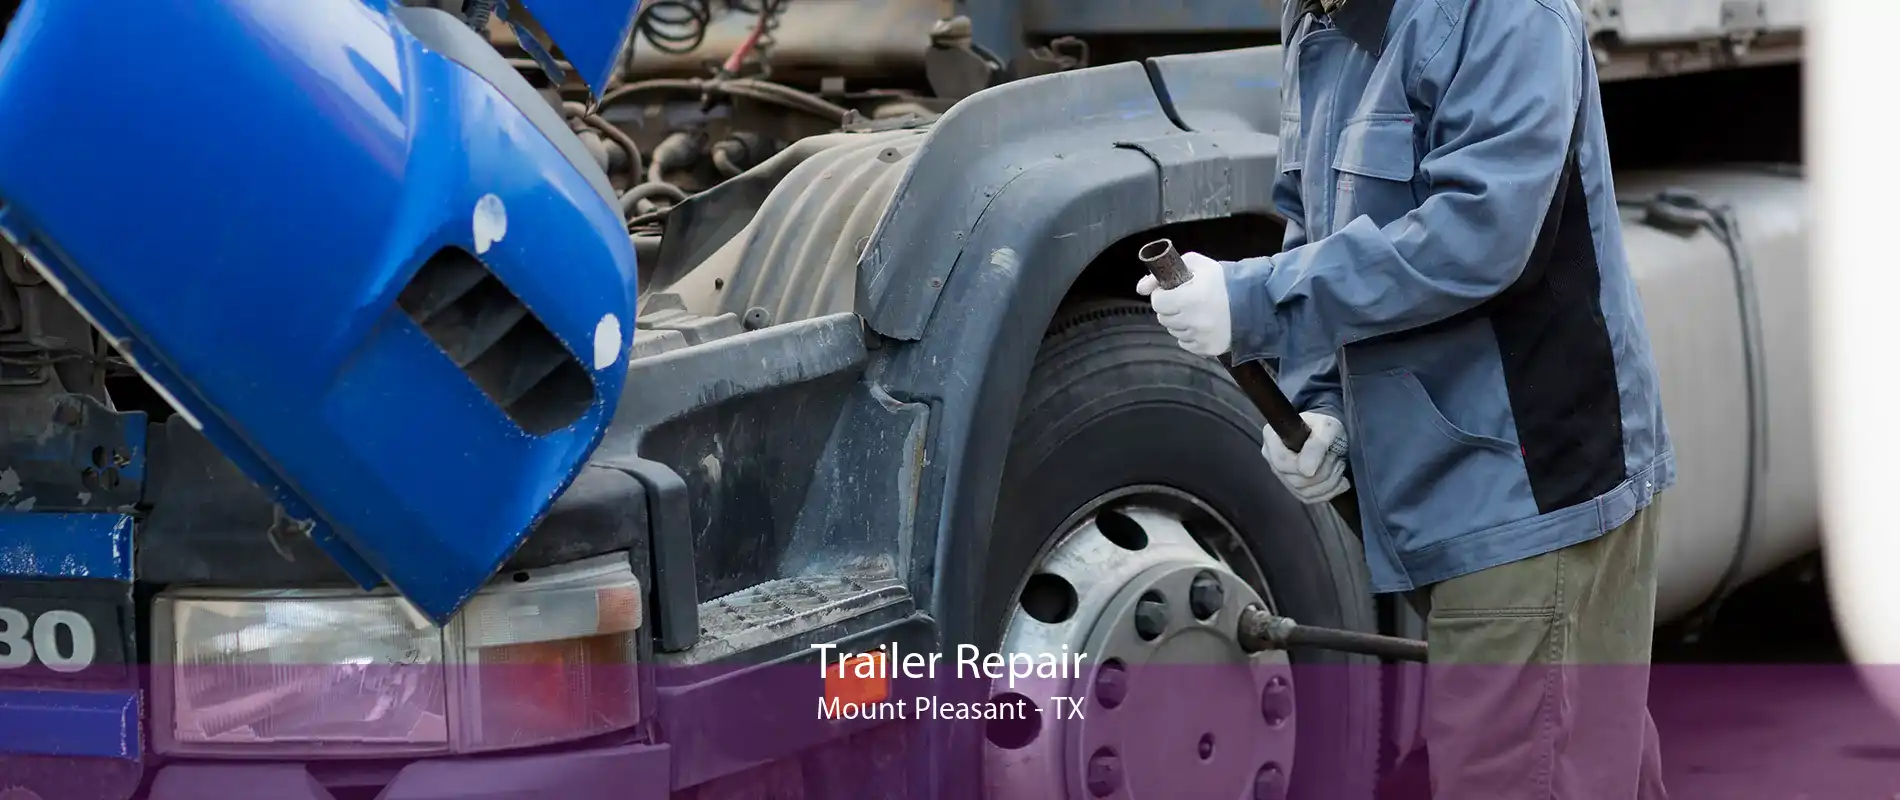 Trailer Repair Mount Pleasant - TX